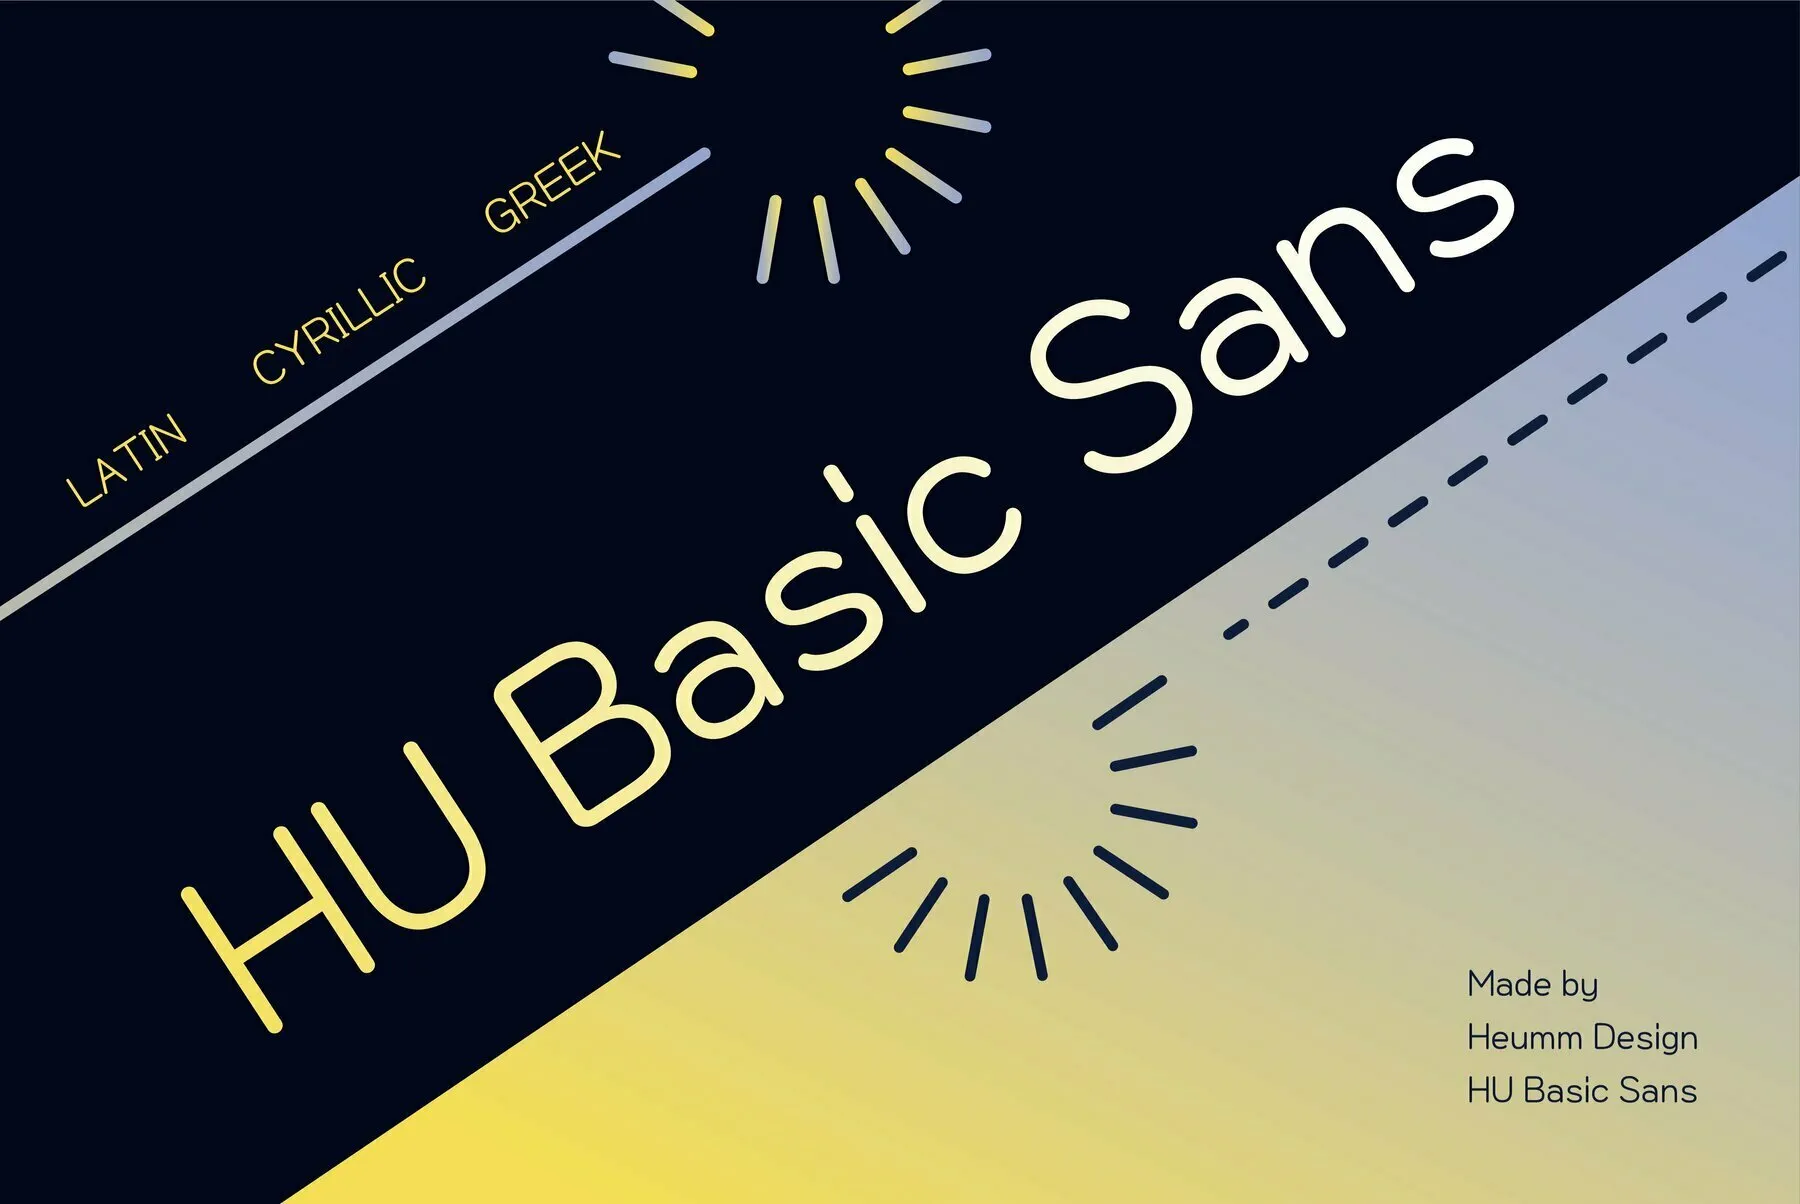 HU Basic Sans